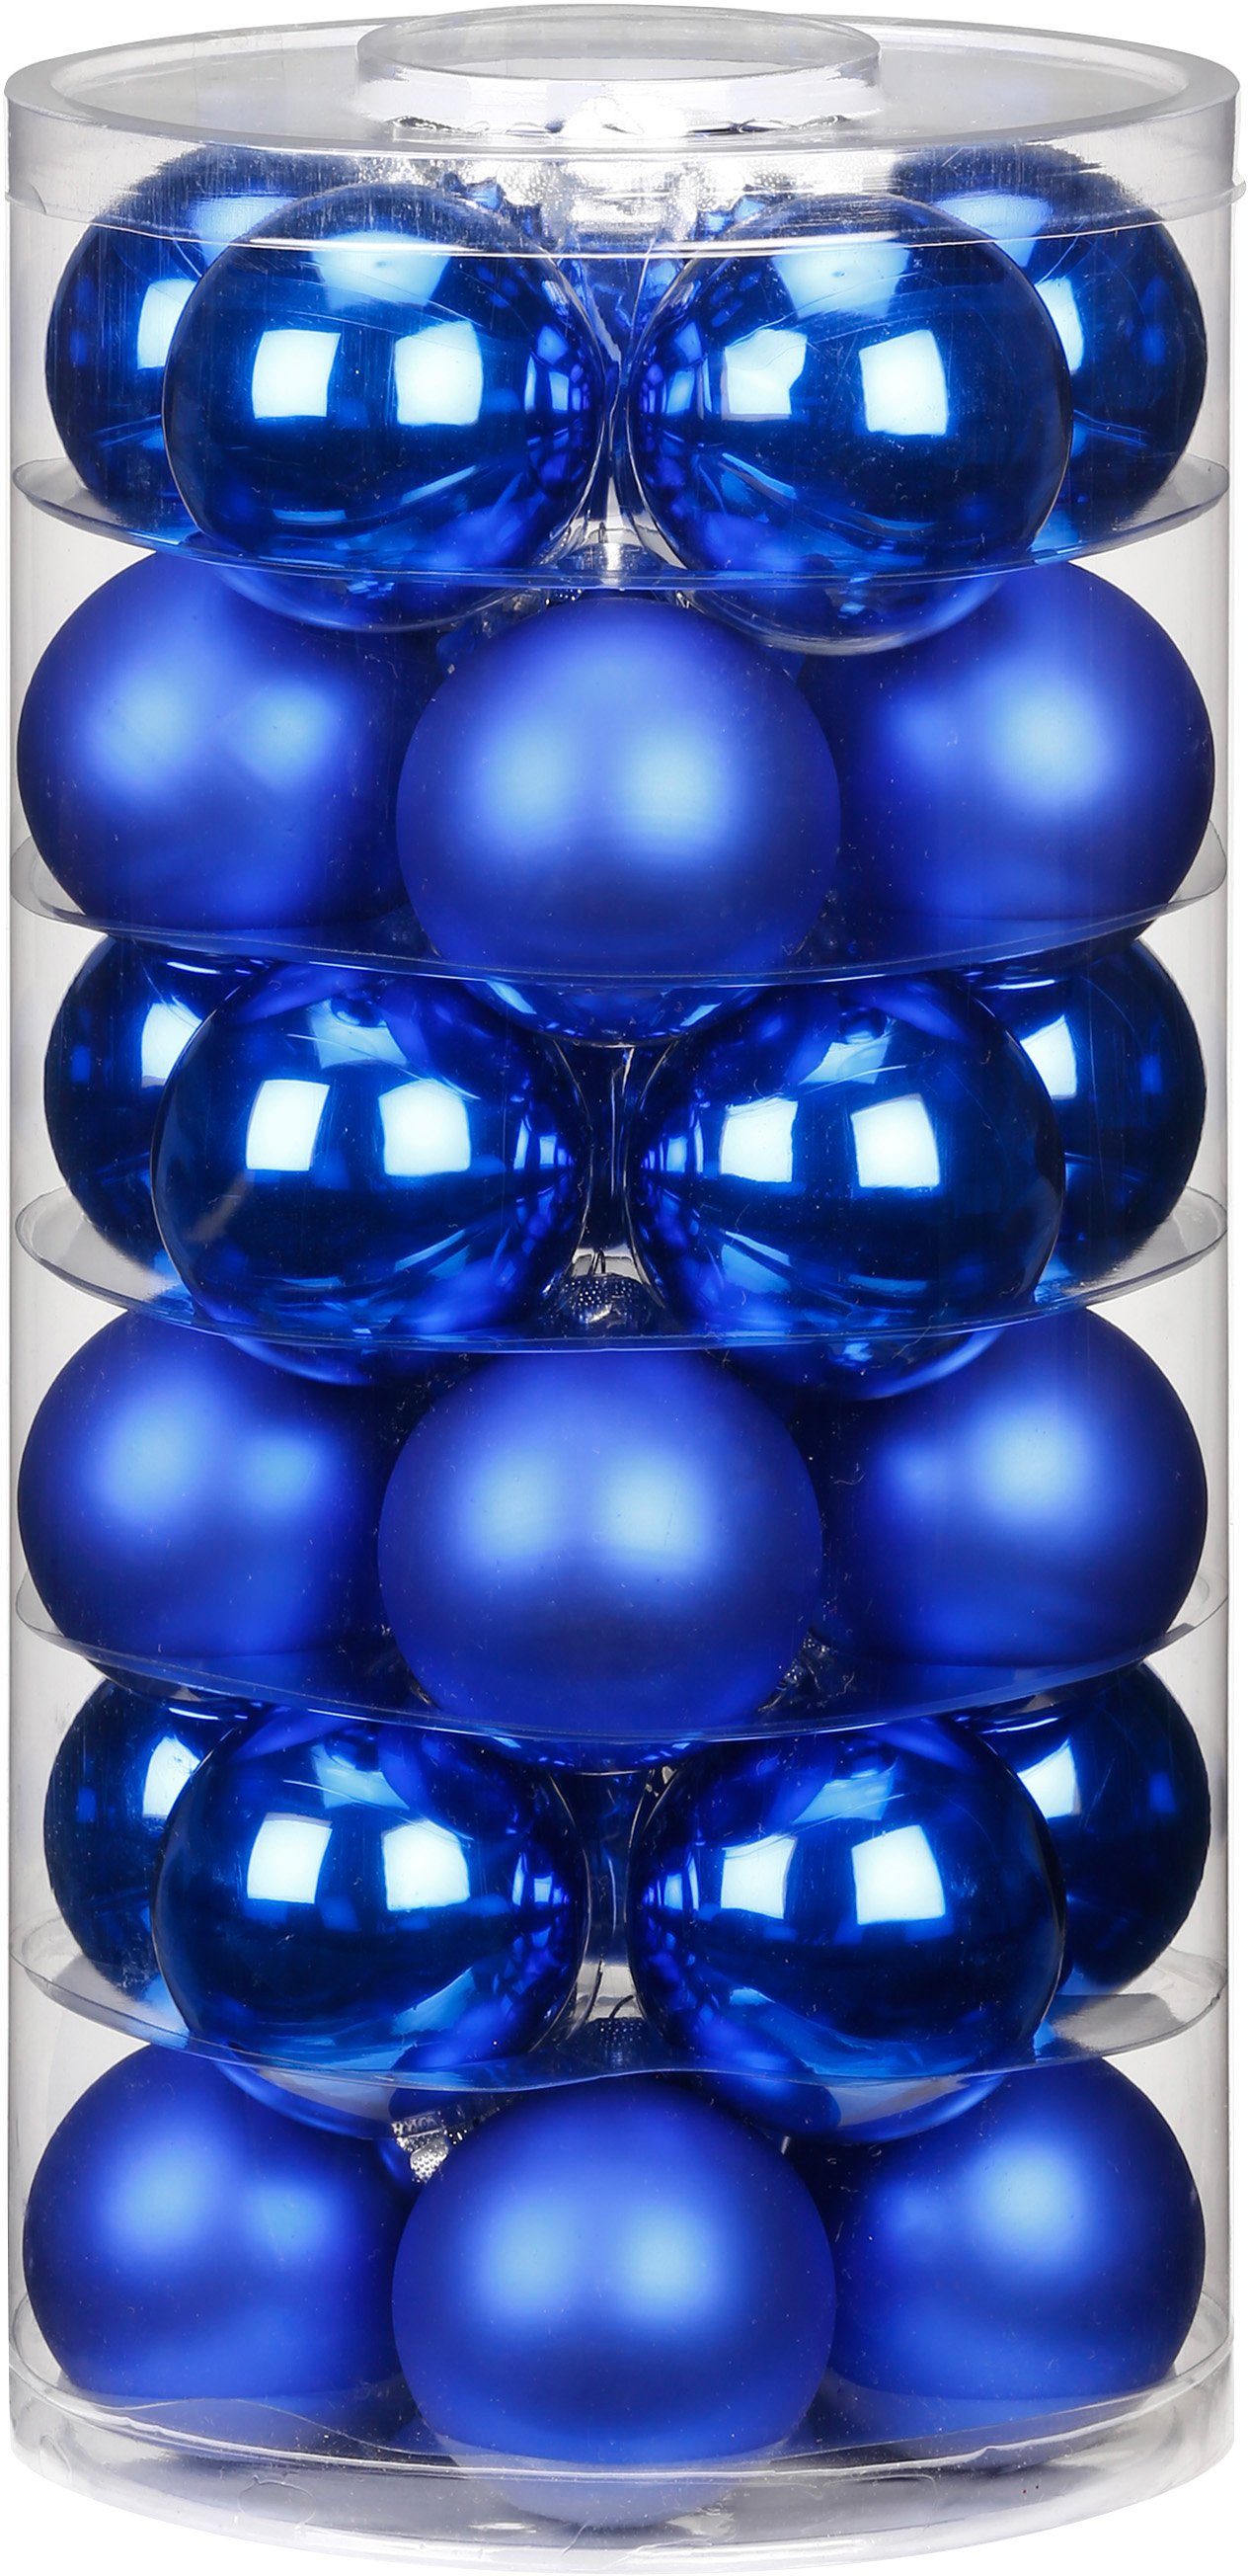 MAGIC by Inge Weihnachtsbaumkugel »Vibrant Blue« (60 Stück), hochwertiger Echtglas-Weihnachtsschmuck, Ø 4 cm und Ø 6 cm-Otto